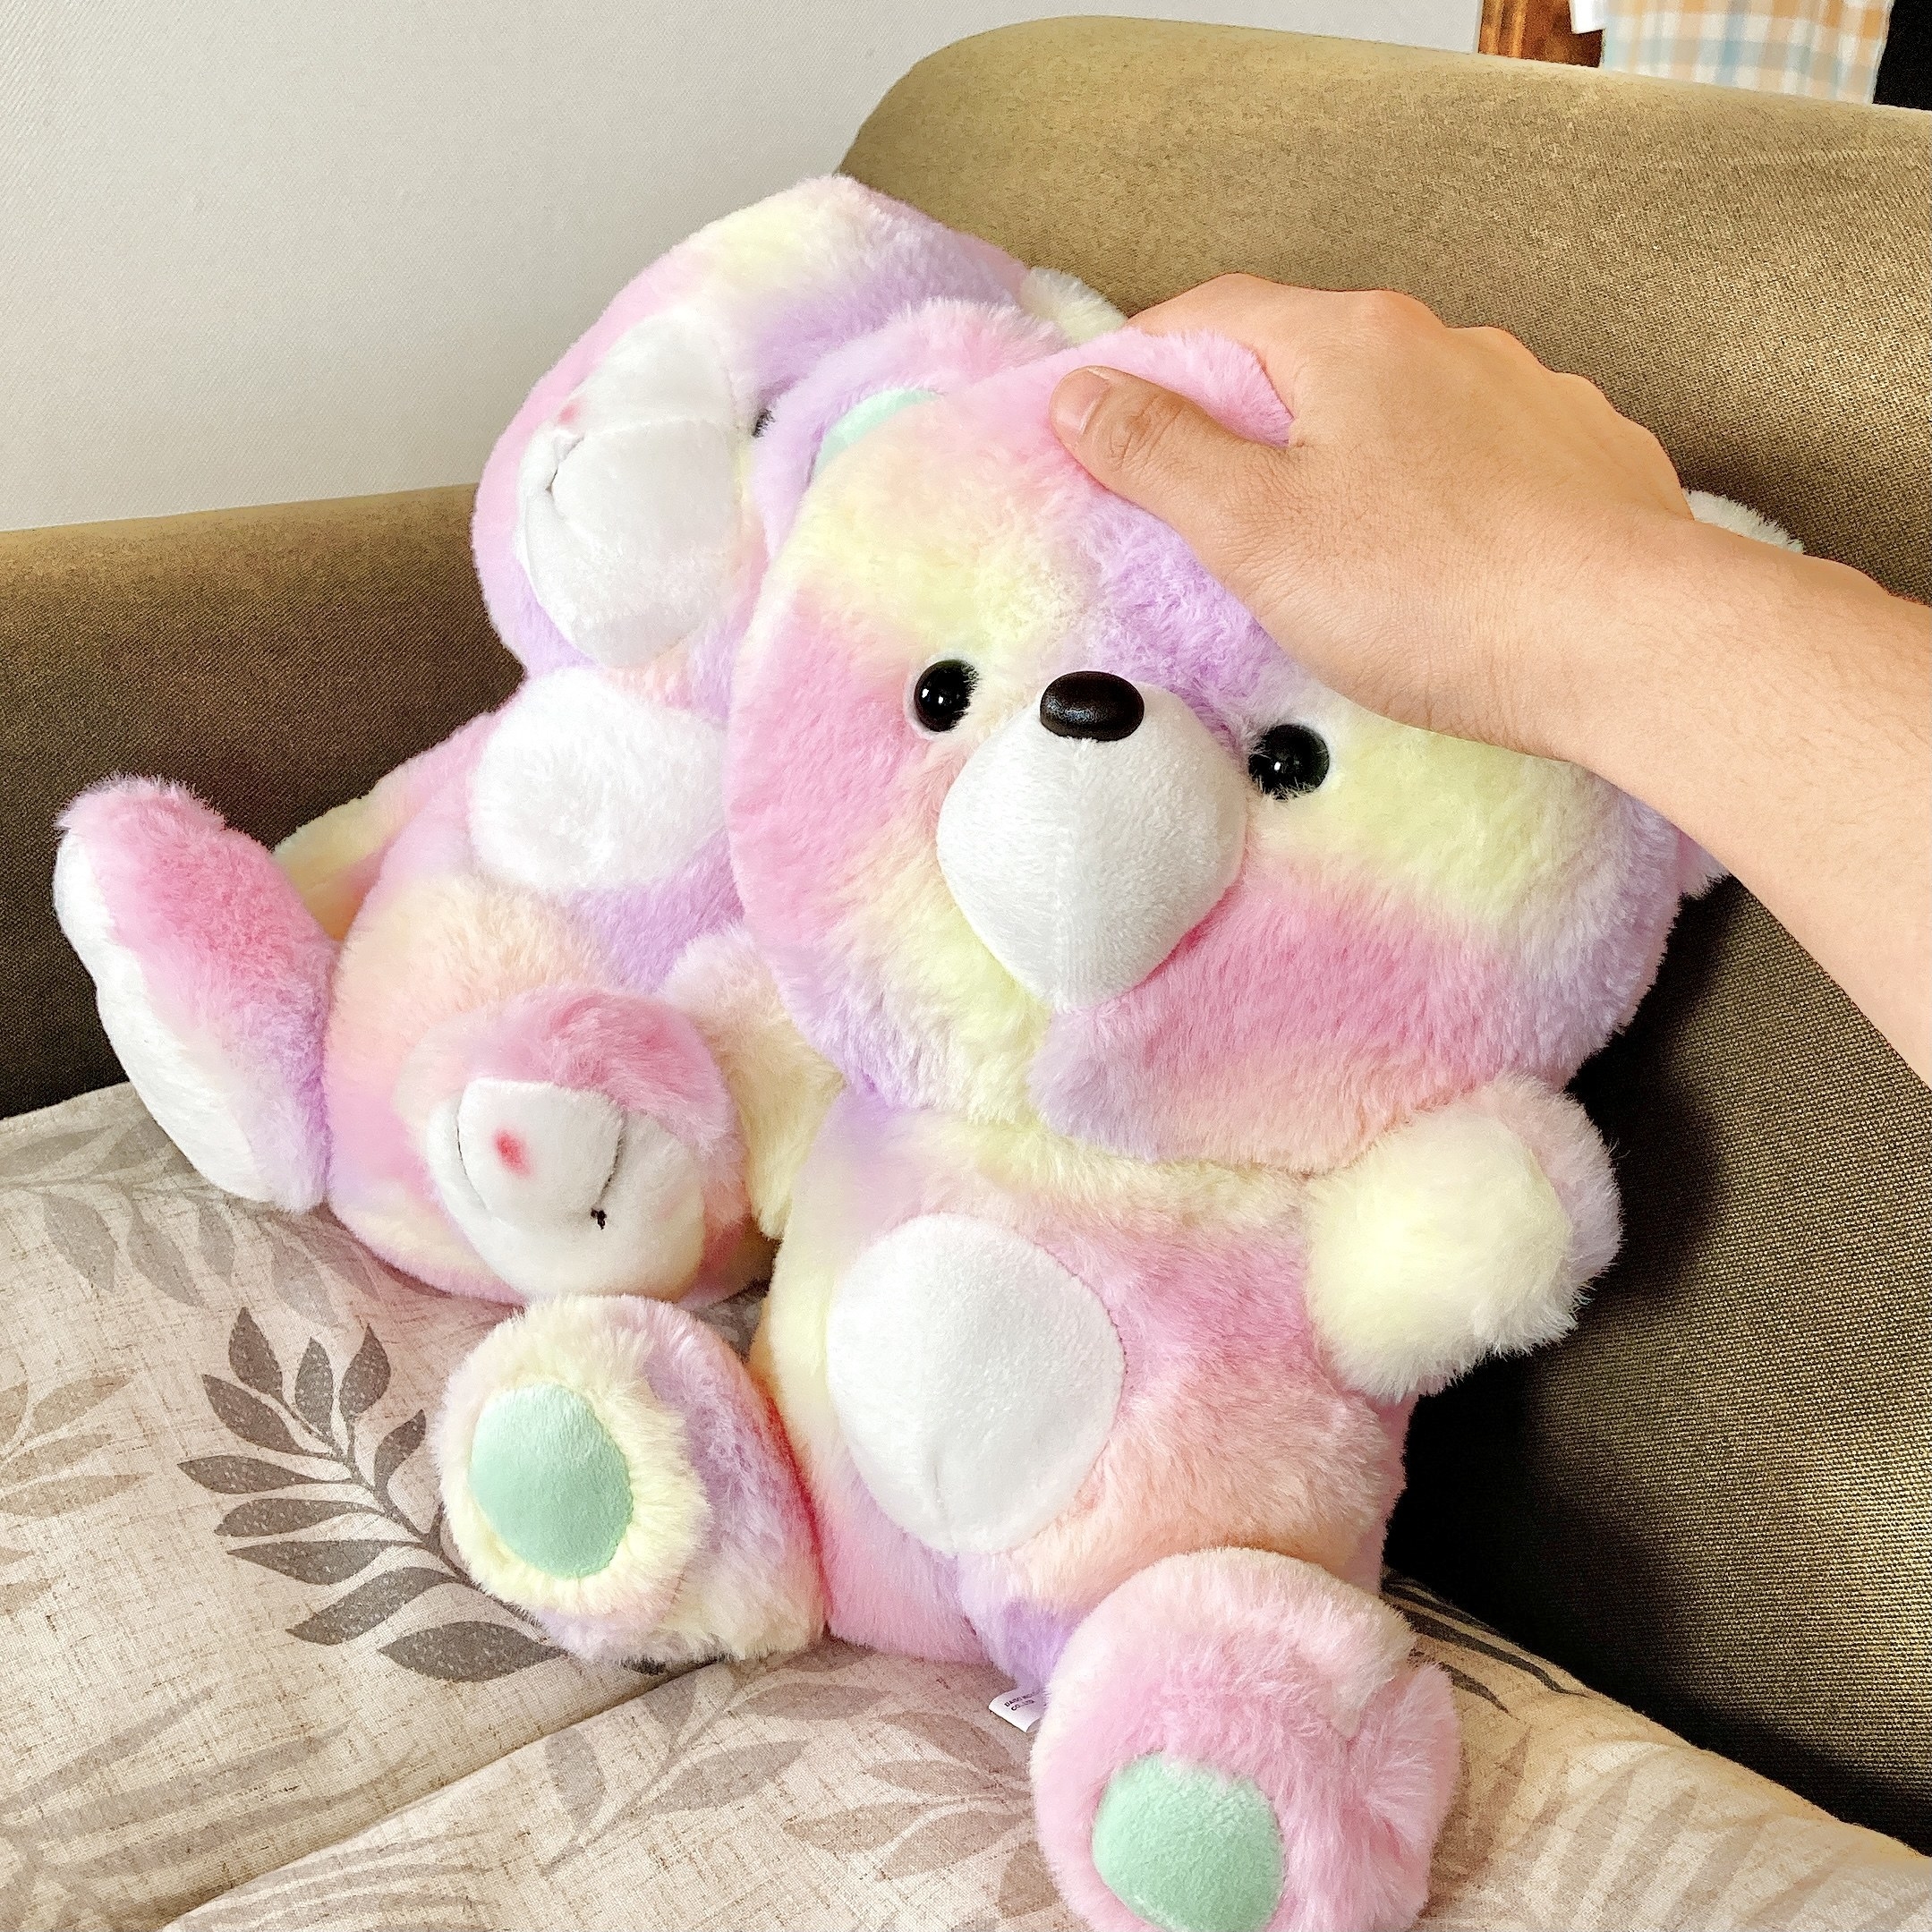 DAISO（ダイソー）のおすすめおもちゃ「Stuffed Toy ウサギ&amp;amp;クマ」